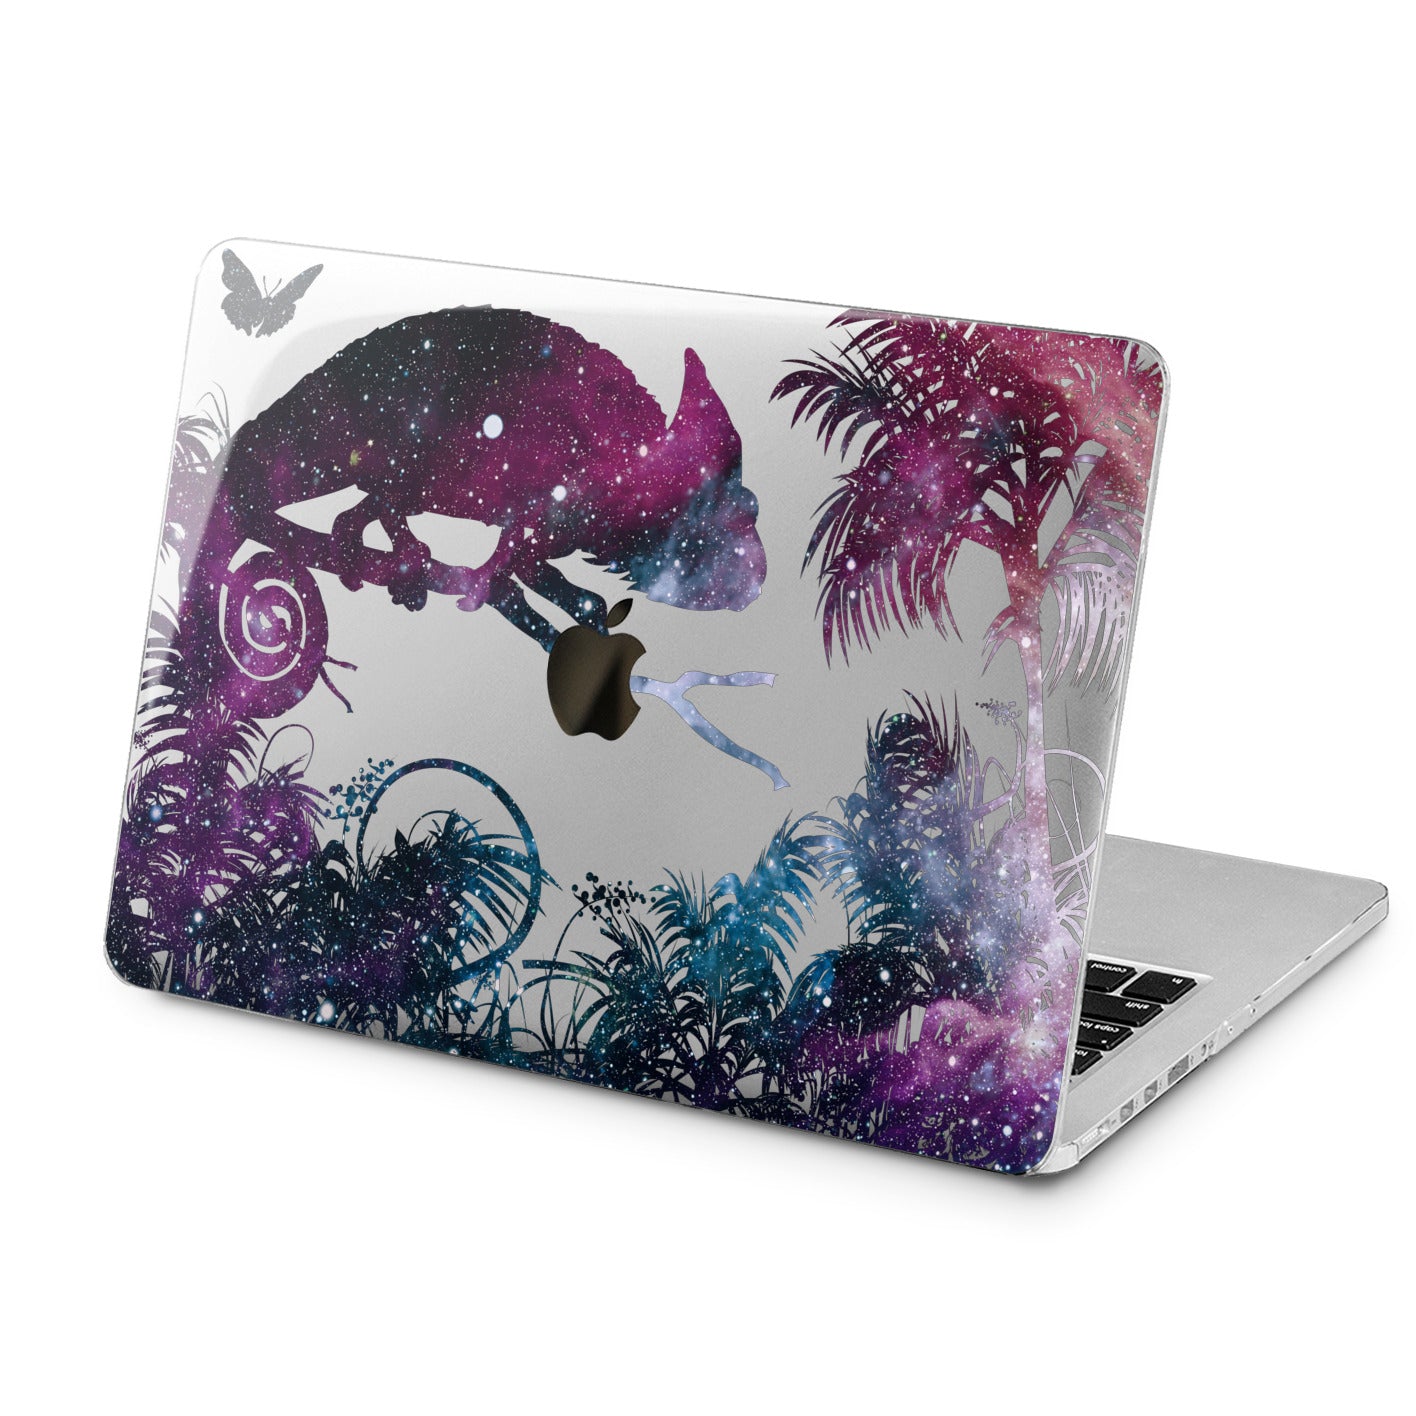 Lex Altern Lex Altern Galaxy Chameleon Case for your Laptop Apple Macbook.